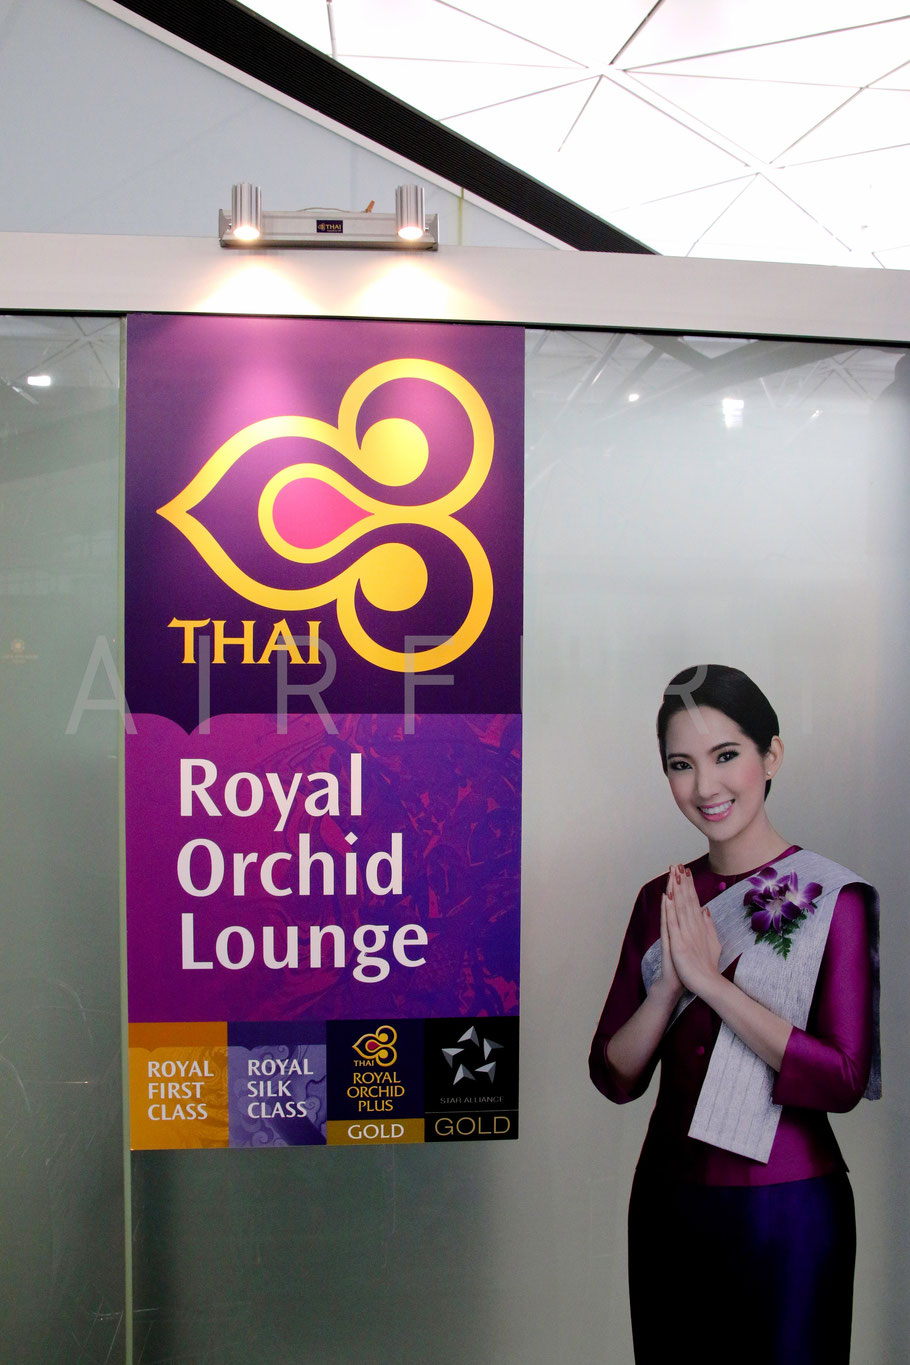 Royal Orchid Lounge Hong Kong